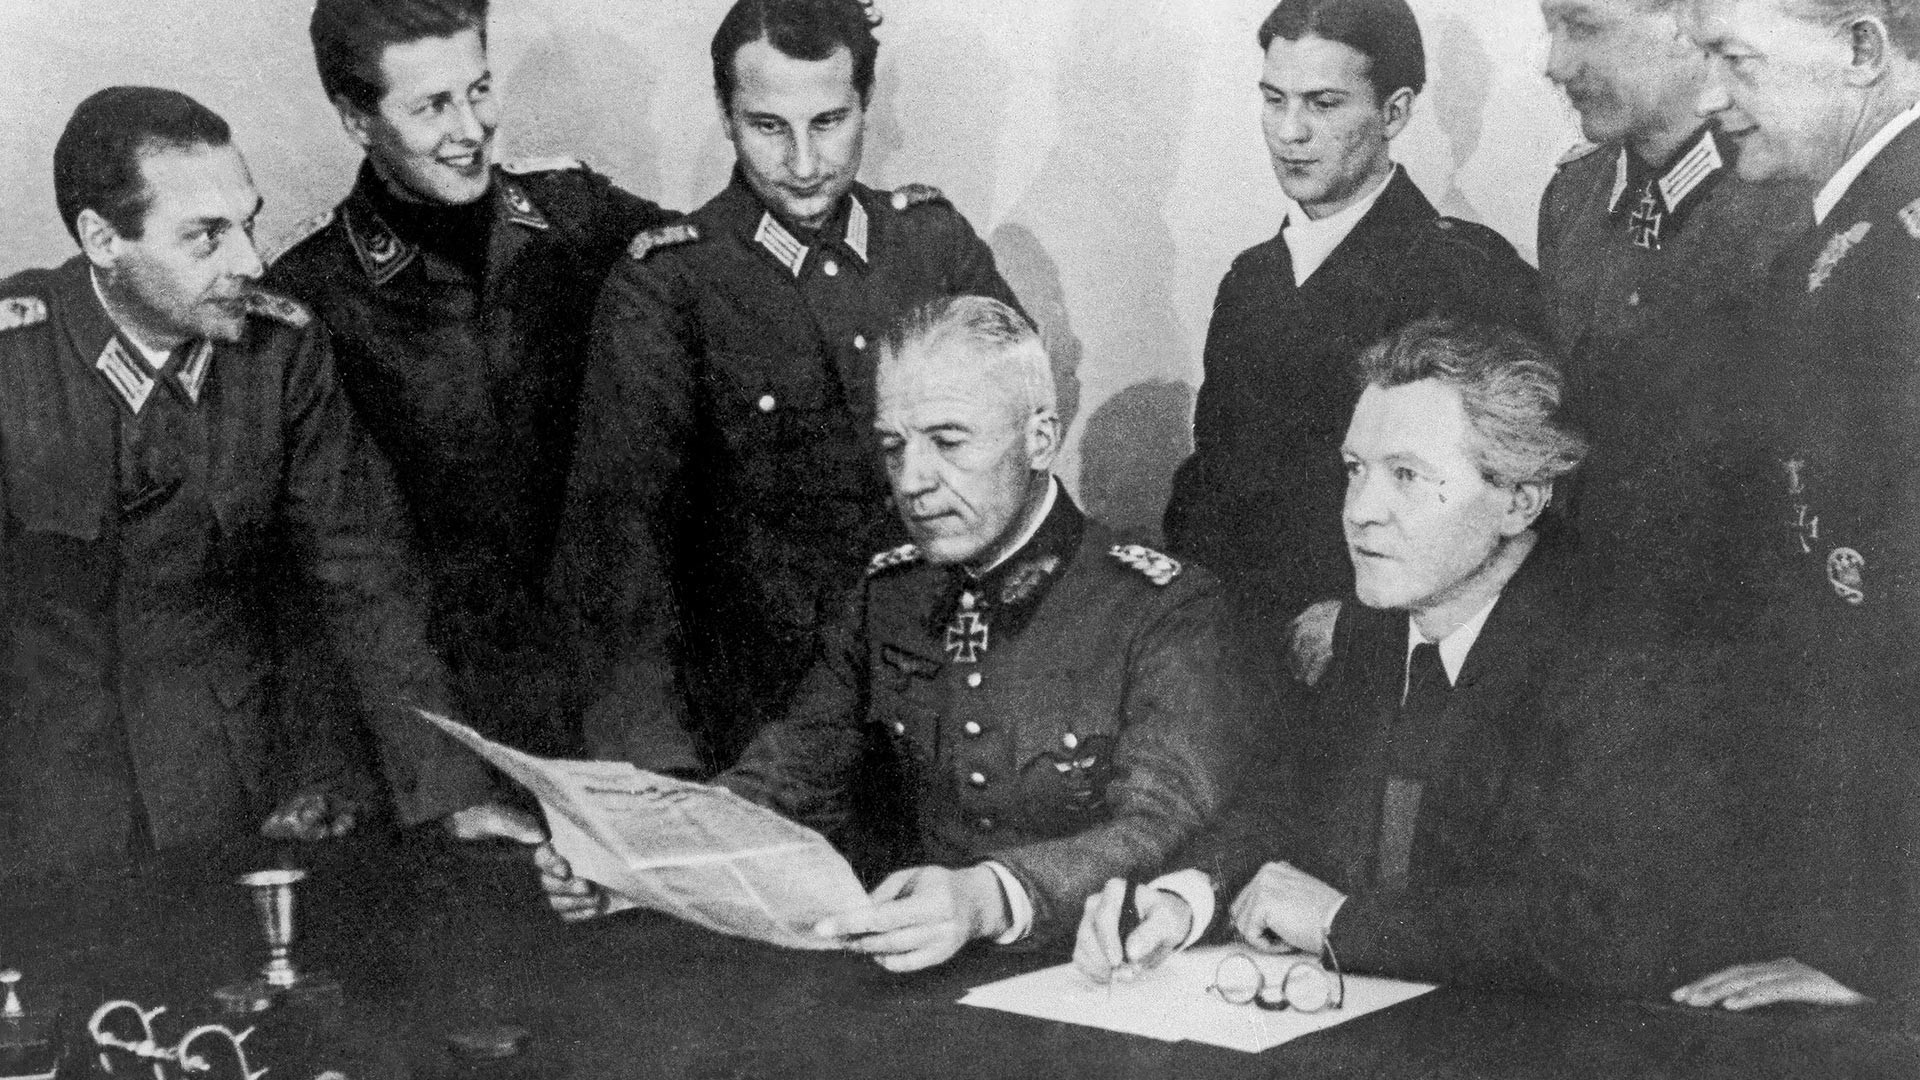 Претседателот на националниот комитет „Слободна Германија“ писателот Ерих Вајнер (во прв план десно) и генерал Фон Зејдлиц на заседание на комитетот.